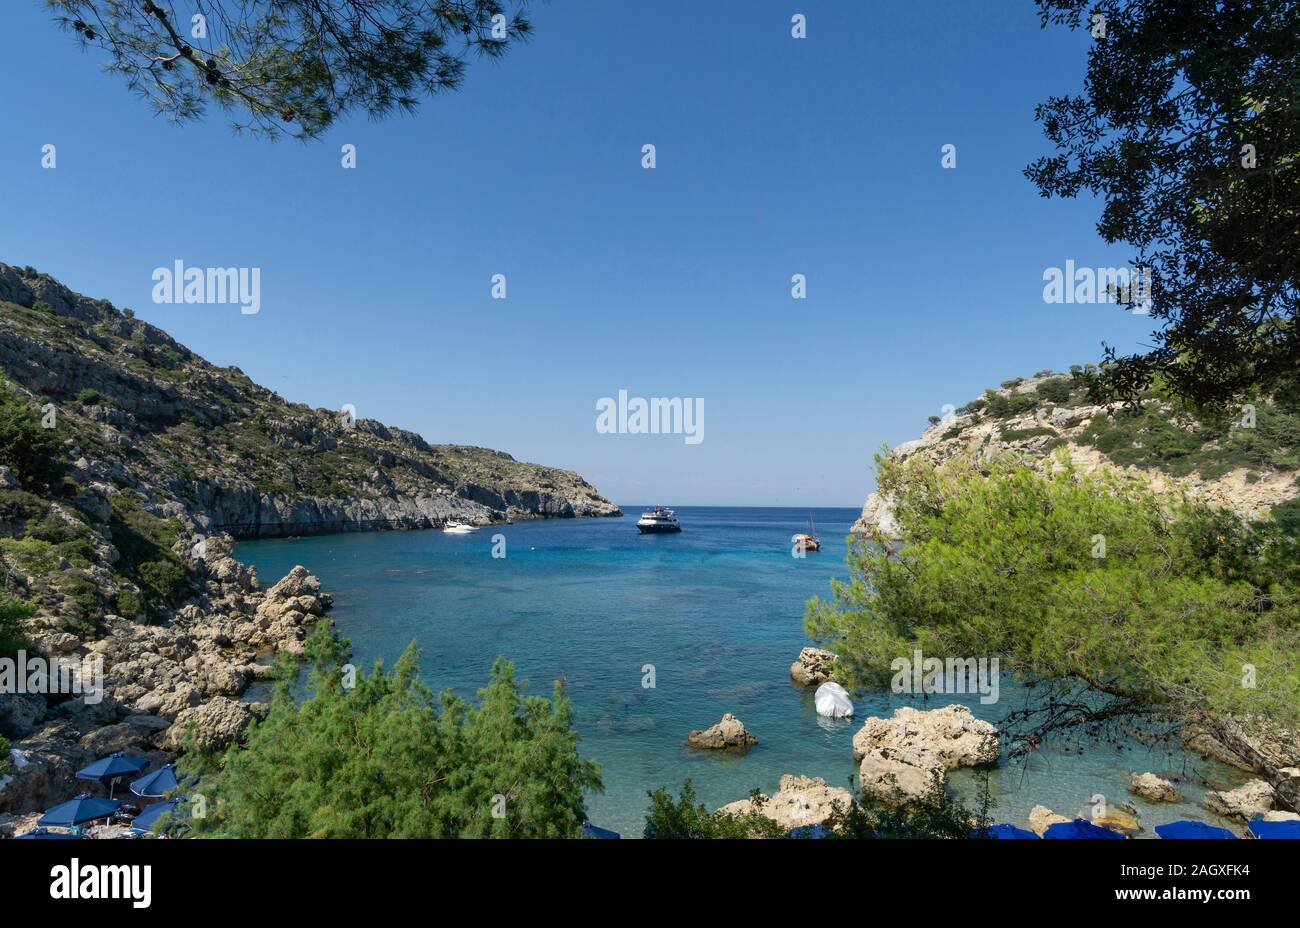 Anthony-Quinn-Bucht ist heute der Name für die Vagies-Bucht an der Ostkueste der griechischen Insel Rhodos. Stock Photo